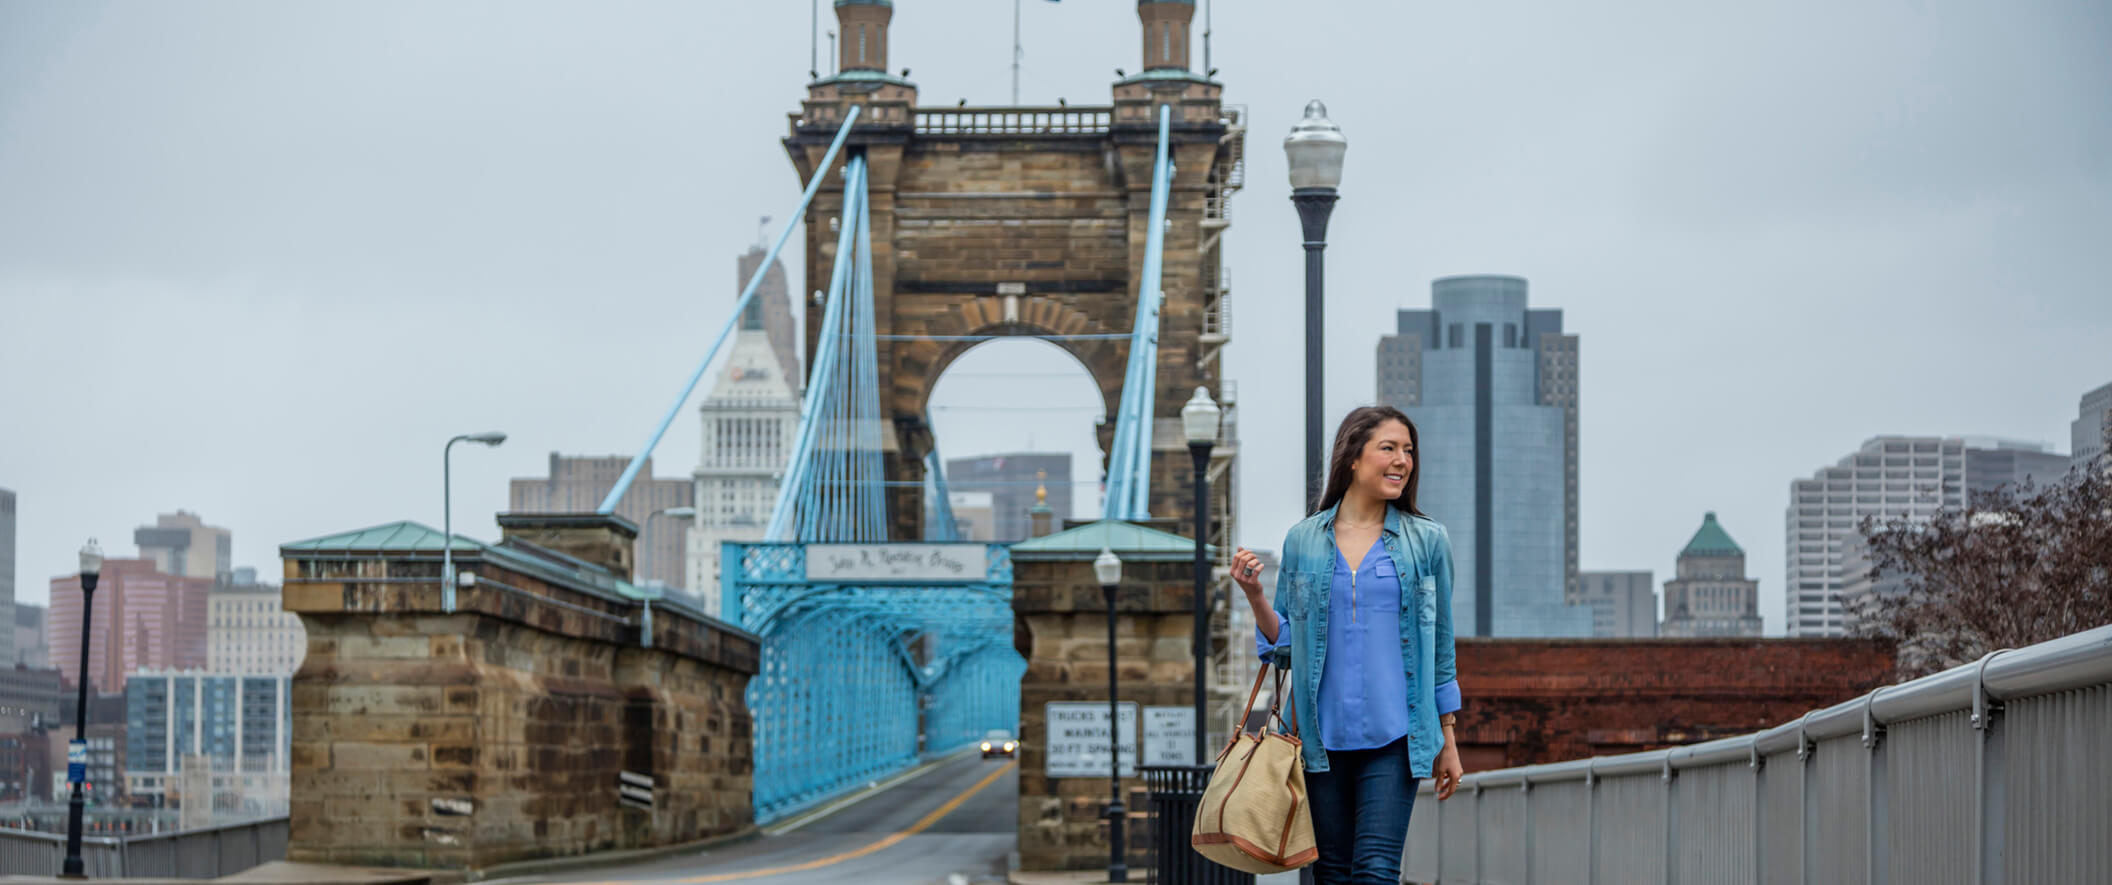 girl walking on bridge with purse